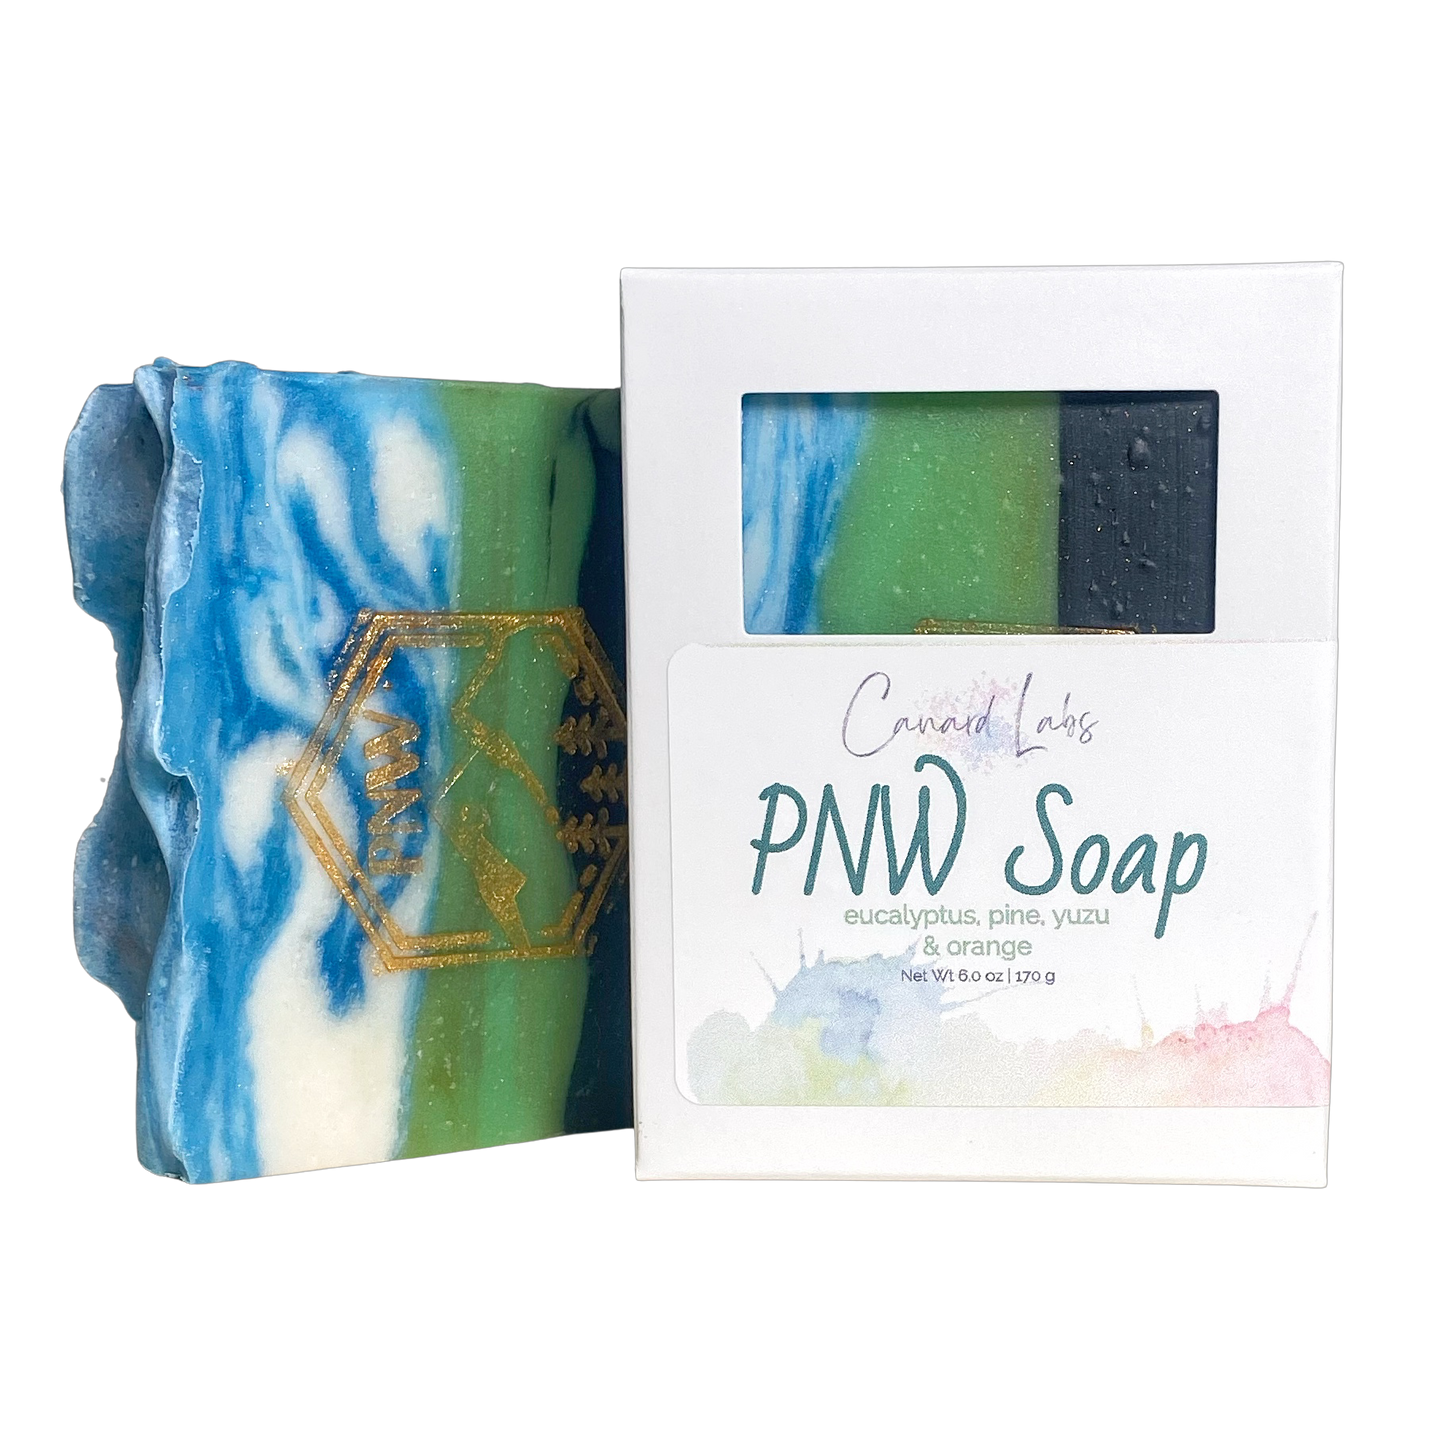 PNW Soap | orange, yuzu, pine + eucalyptus